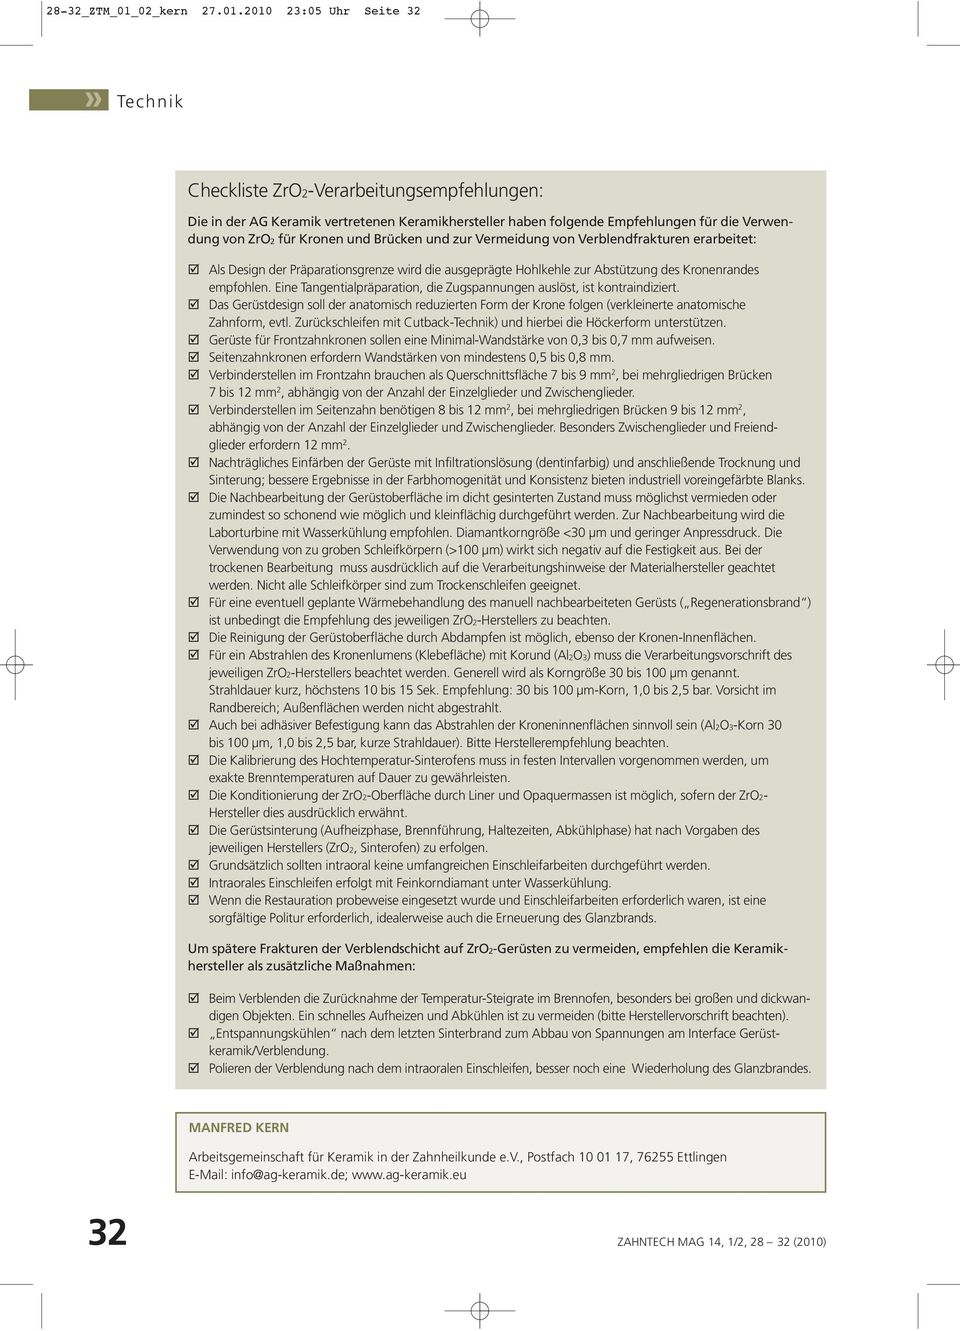 2010 23:05 Uhr Seite 32 Checkliste ZrO2-Verarbeitungsempfehlungen: Die in der AG Keramik vertretenen Keramikhersteller haben folgende Empfehlungen für die Verwendung von ZrO2 für Kronen und Brücken